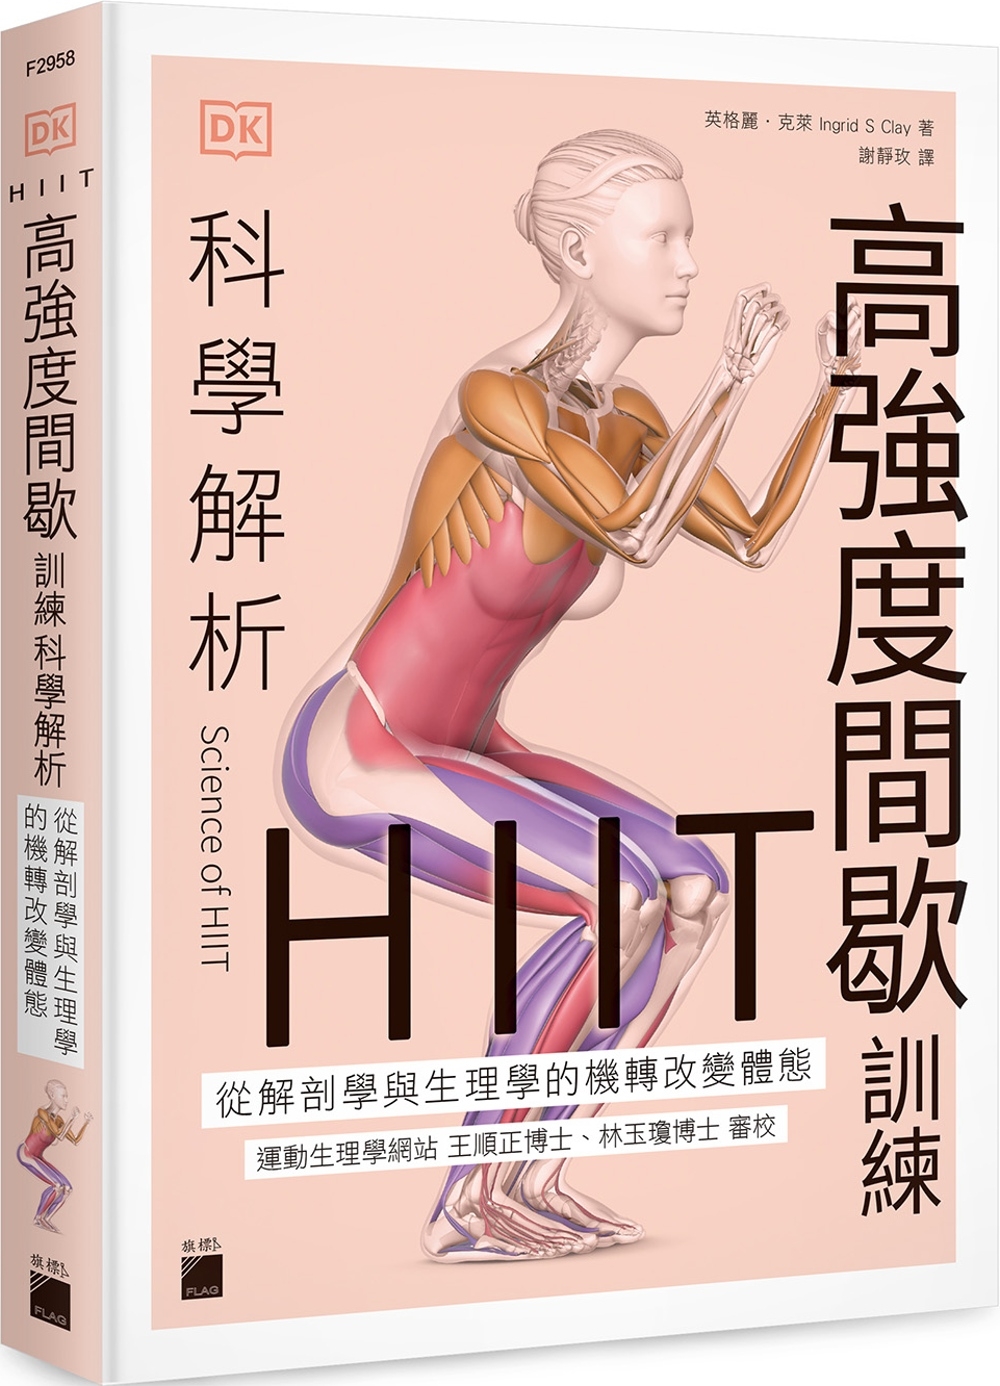 HIIT 高強度間歇訓練科學解析：從解剖學與生理學的機轉改變...